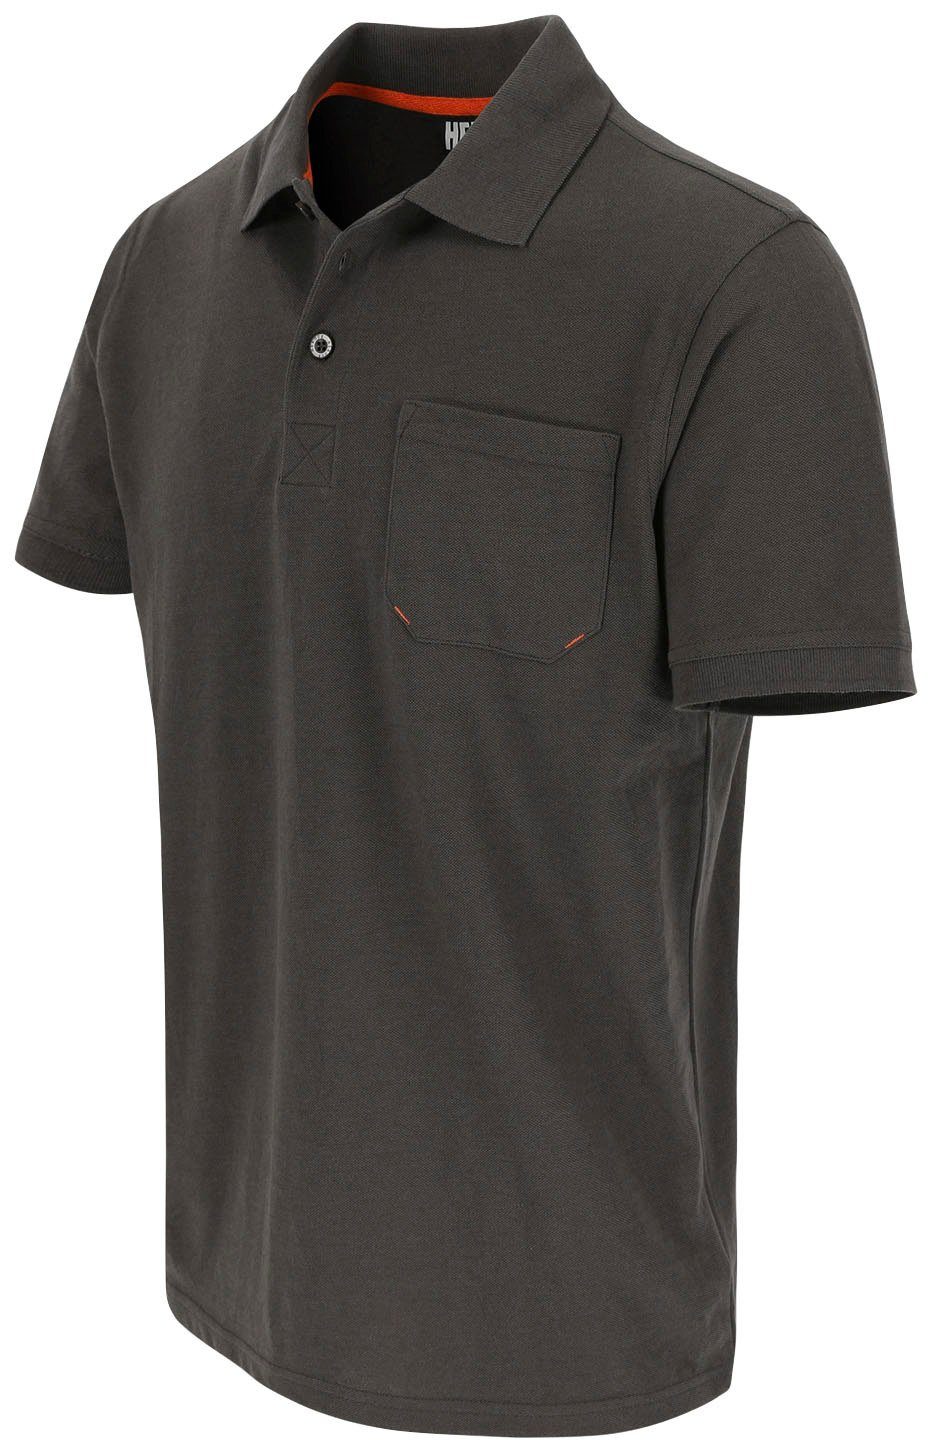 Herock Poloshirt Kurzärmlig Farben Leo Bündchen, grau und verschiedene 1 Rippstrick-Kragen Polohemd Brusttasche